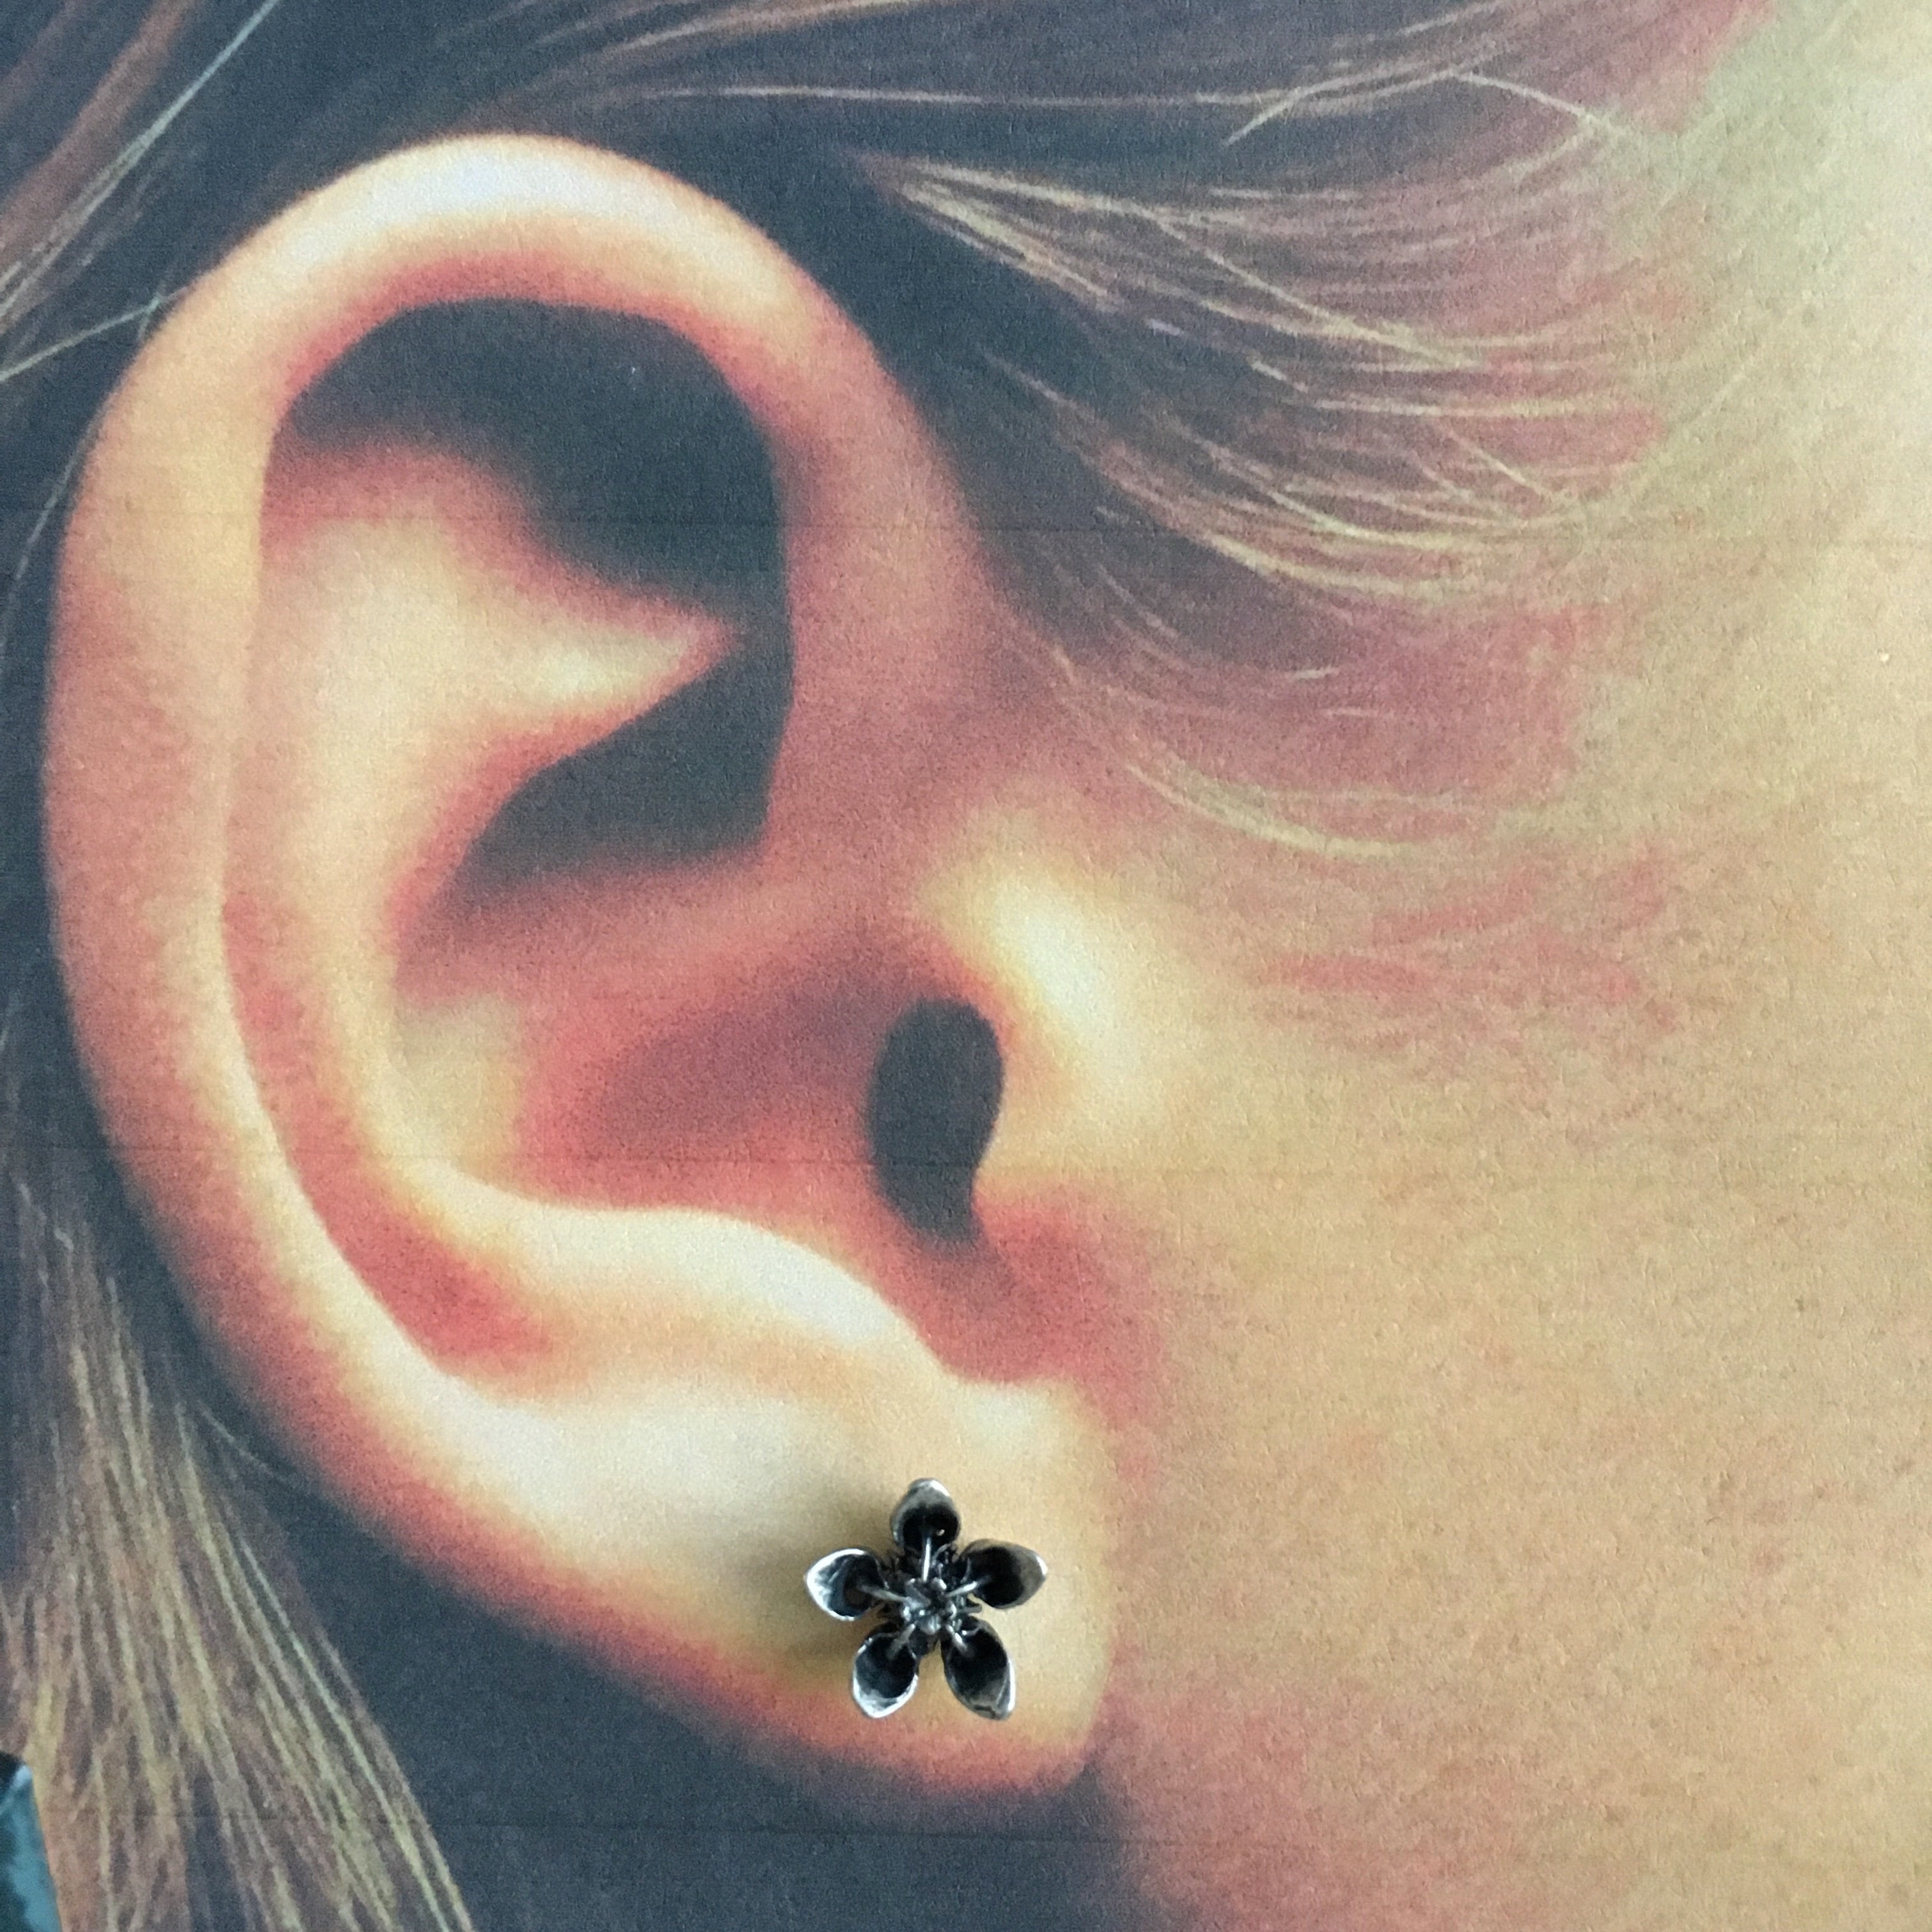 Milkweed Bloom Stud Earrings - SSMDesign